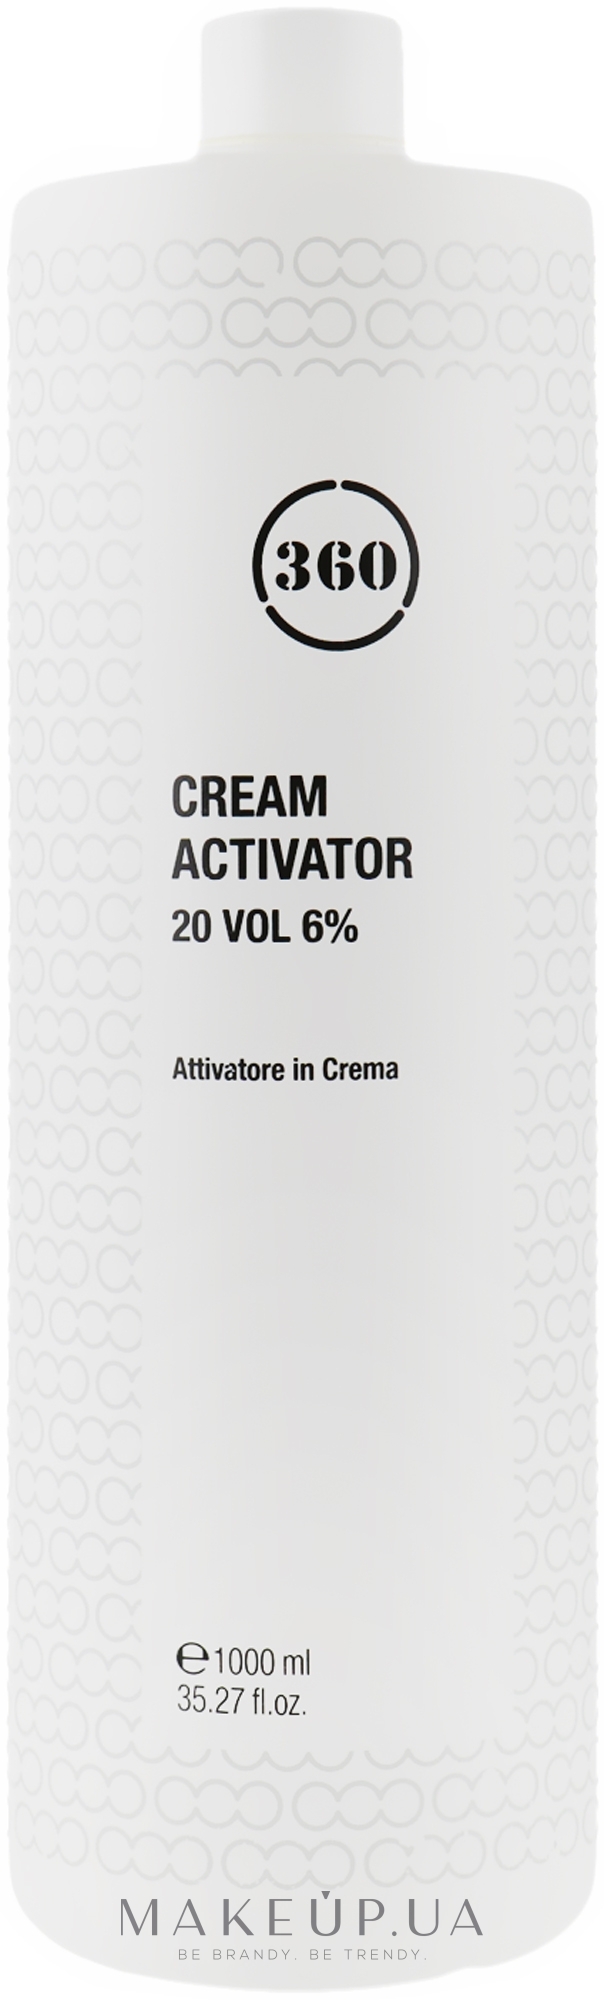 Крем-активатор 20 - 360 Cream Activator 20 Vol 6% — фото 1000ml